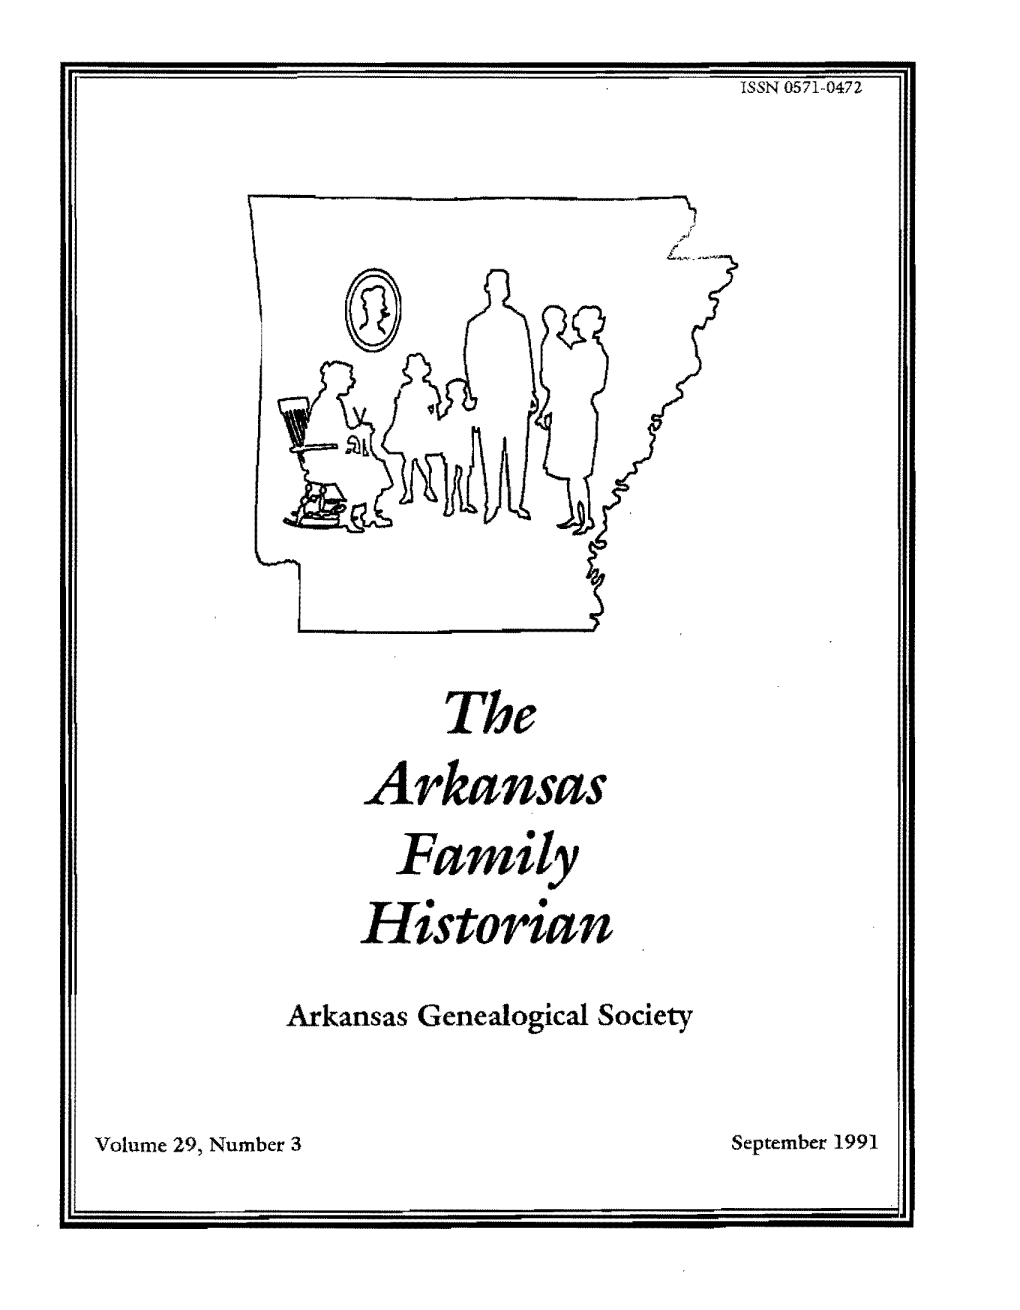 The Arkansas Family Historian